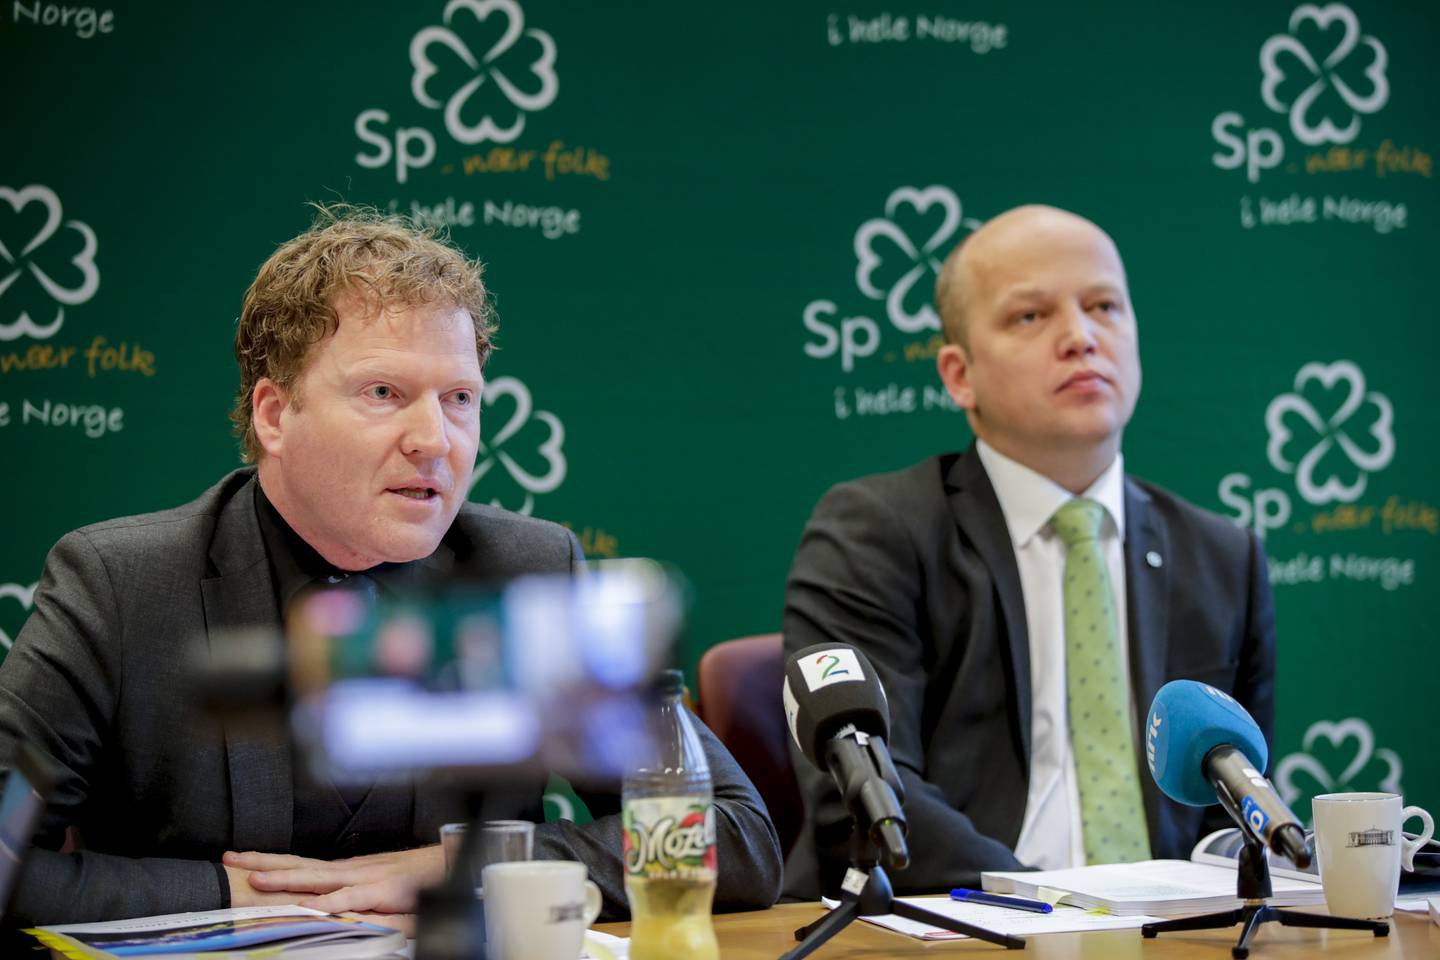 Senterparti-leder Trygve Slagsvold Vedum og Sigbjørn Gjelsvik representerer partiet som fikk flest nye stemmer i årets valg, sammenlignet med i 2017.